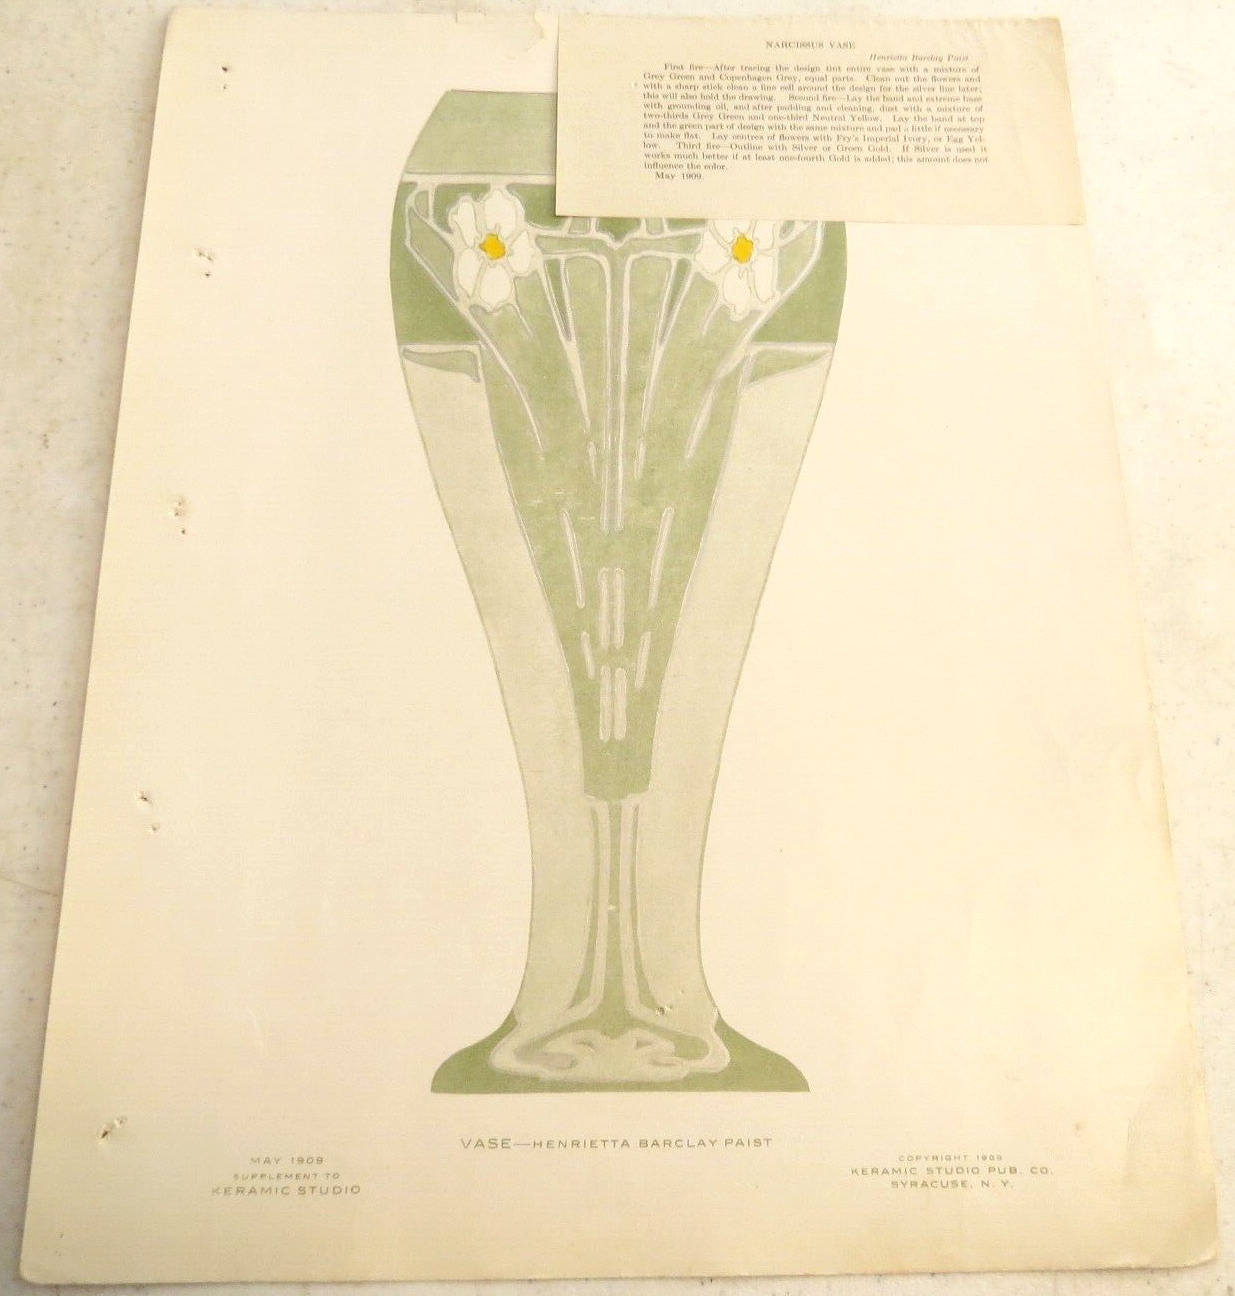 May 1909 Keramic Studio Design Narcissus Vase Henrietta Barclay Paist Illus NOTE